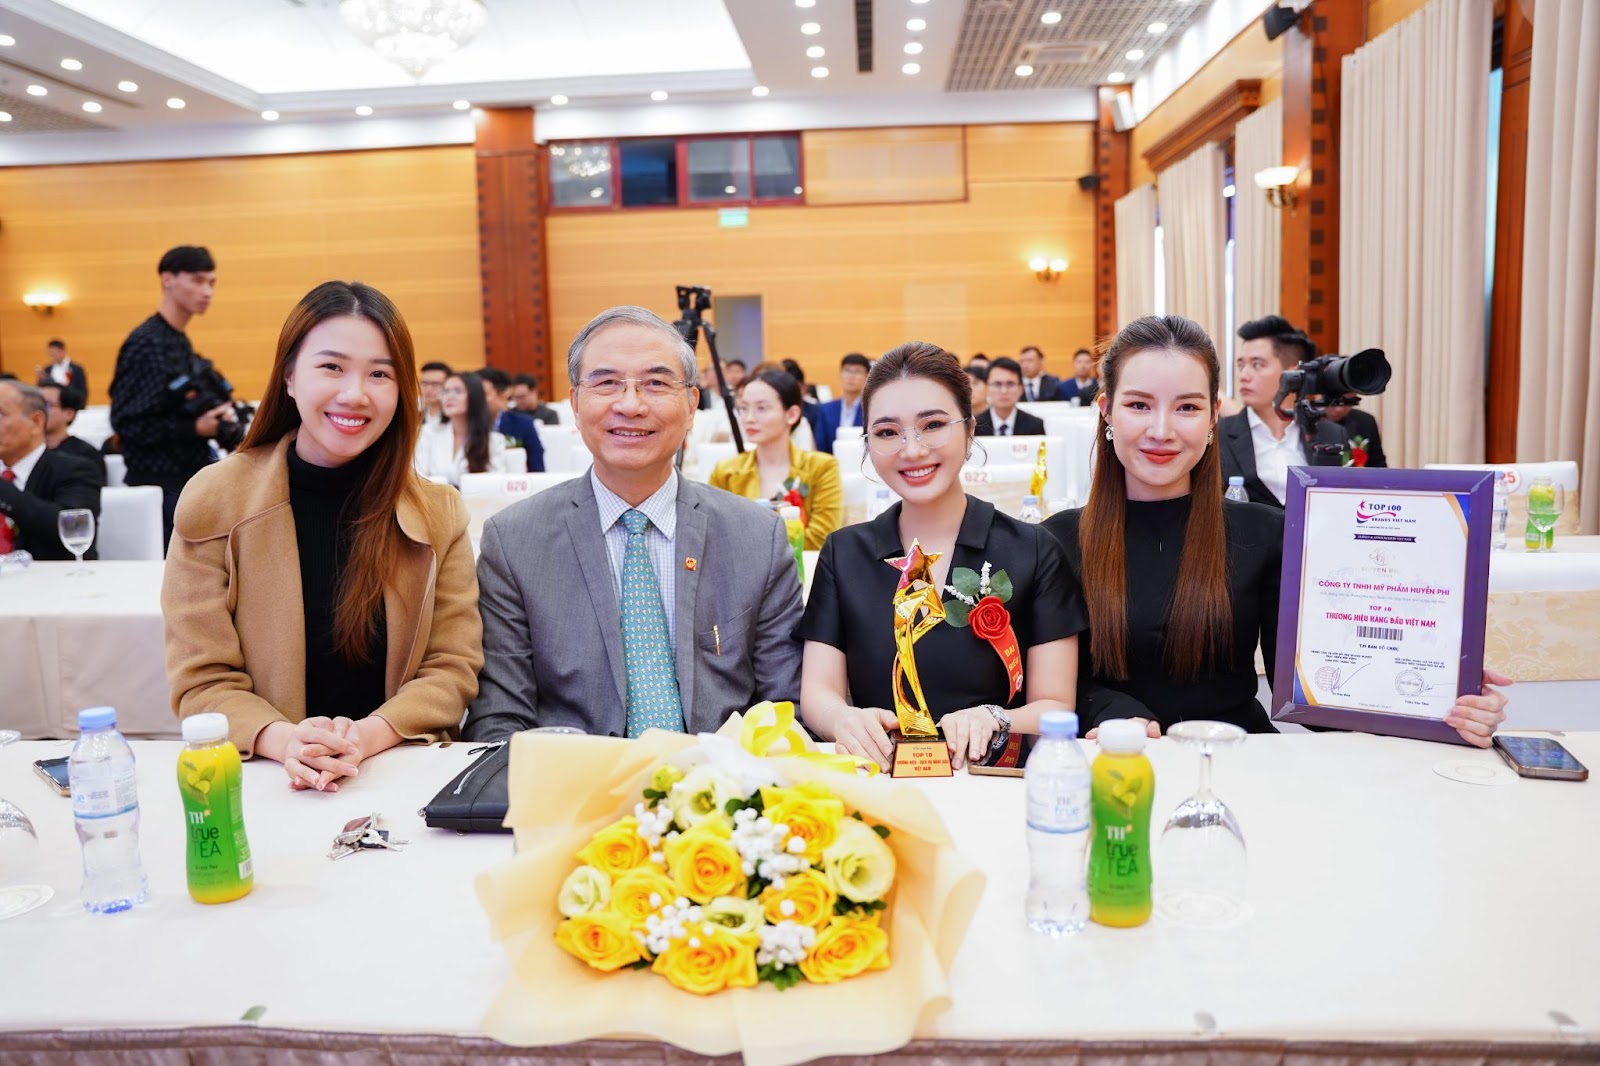 Huyền Phi Cosmetics lọt Top 10 Thương hiệu - Dịch vụ Uy tín hàng đầu Việt Nam - 2